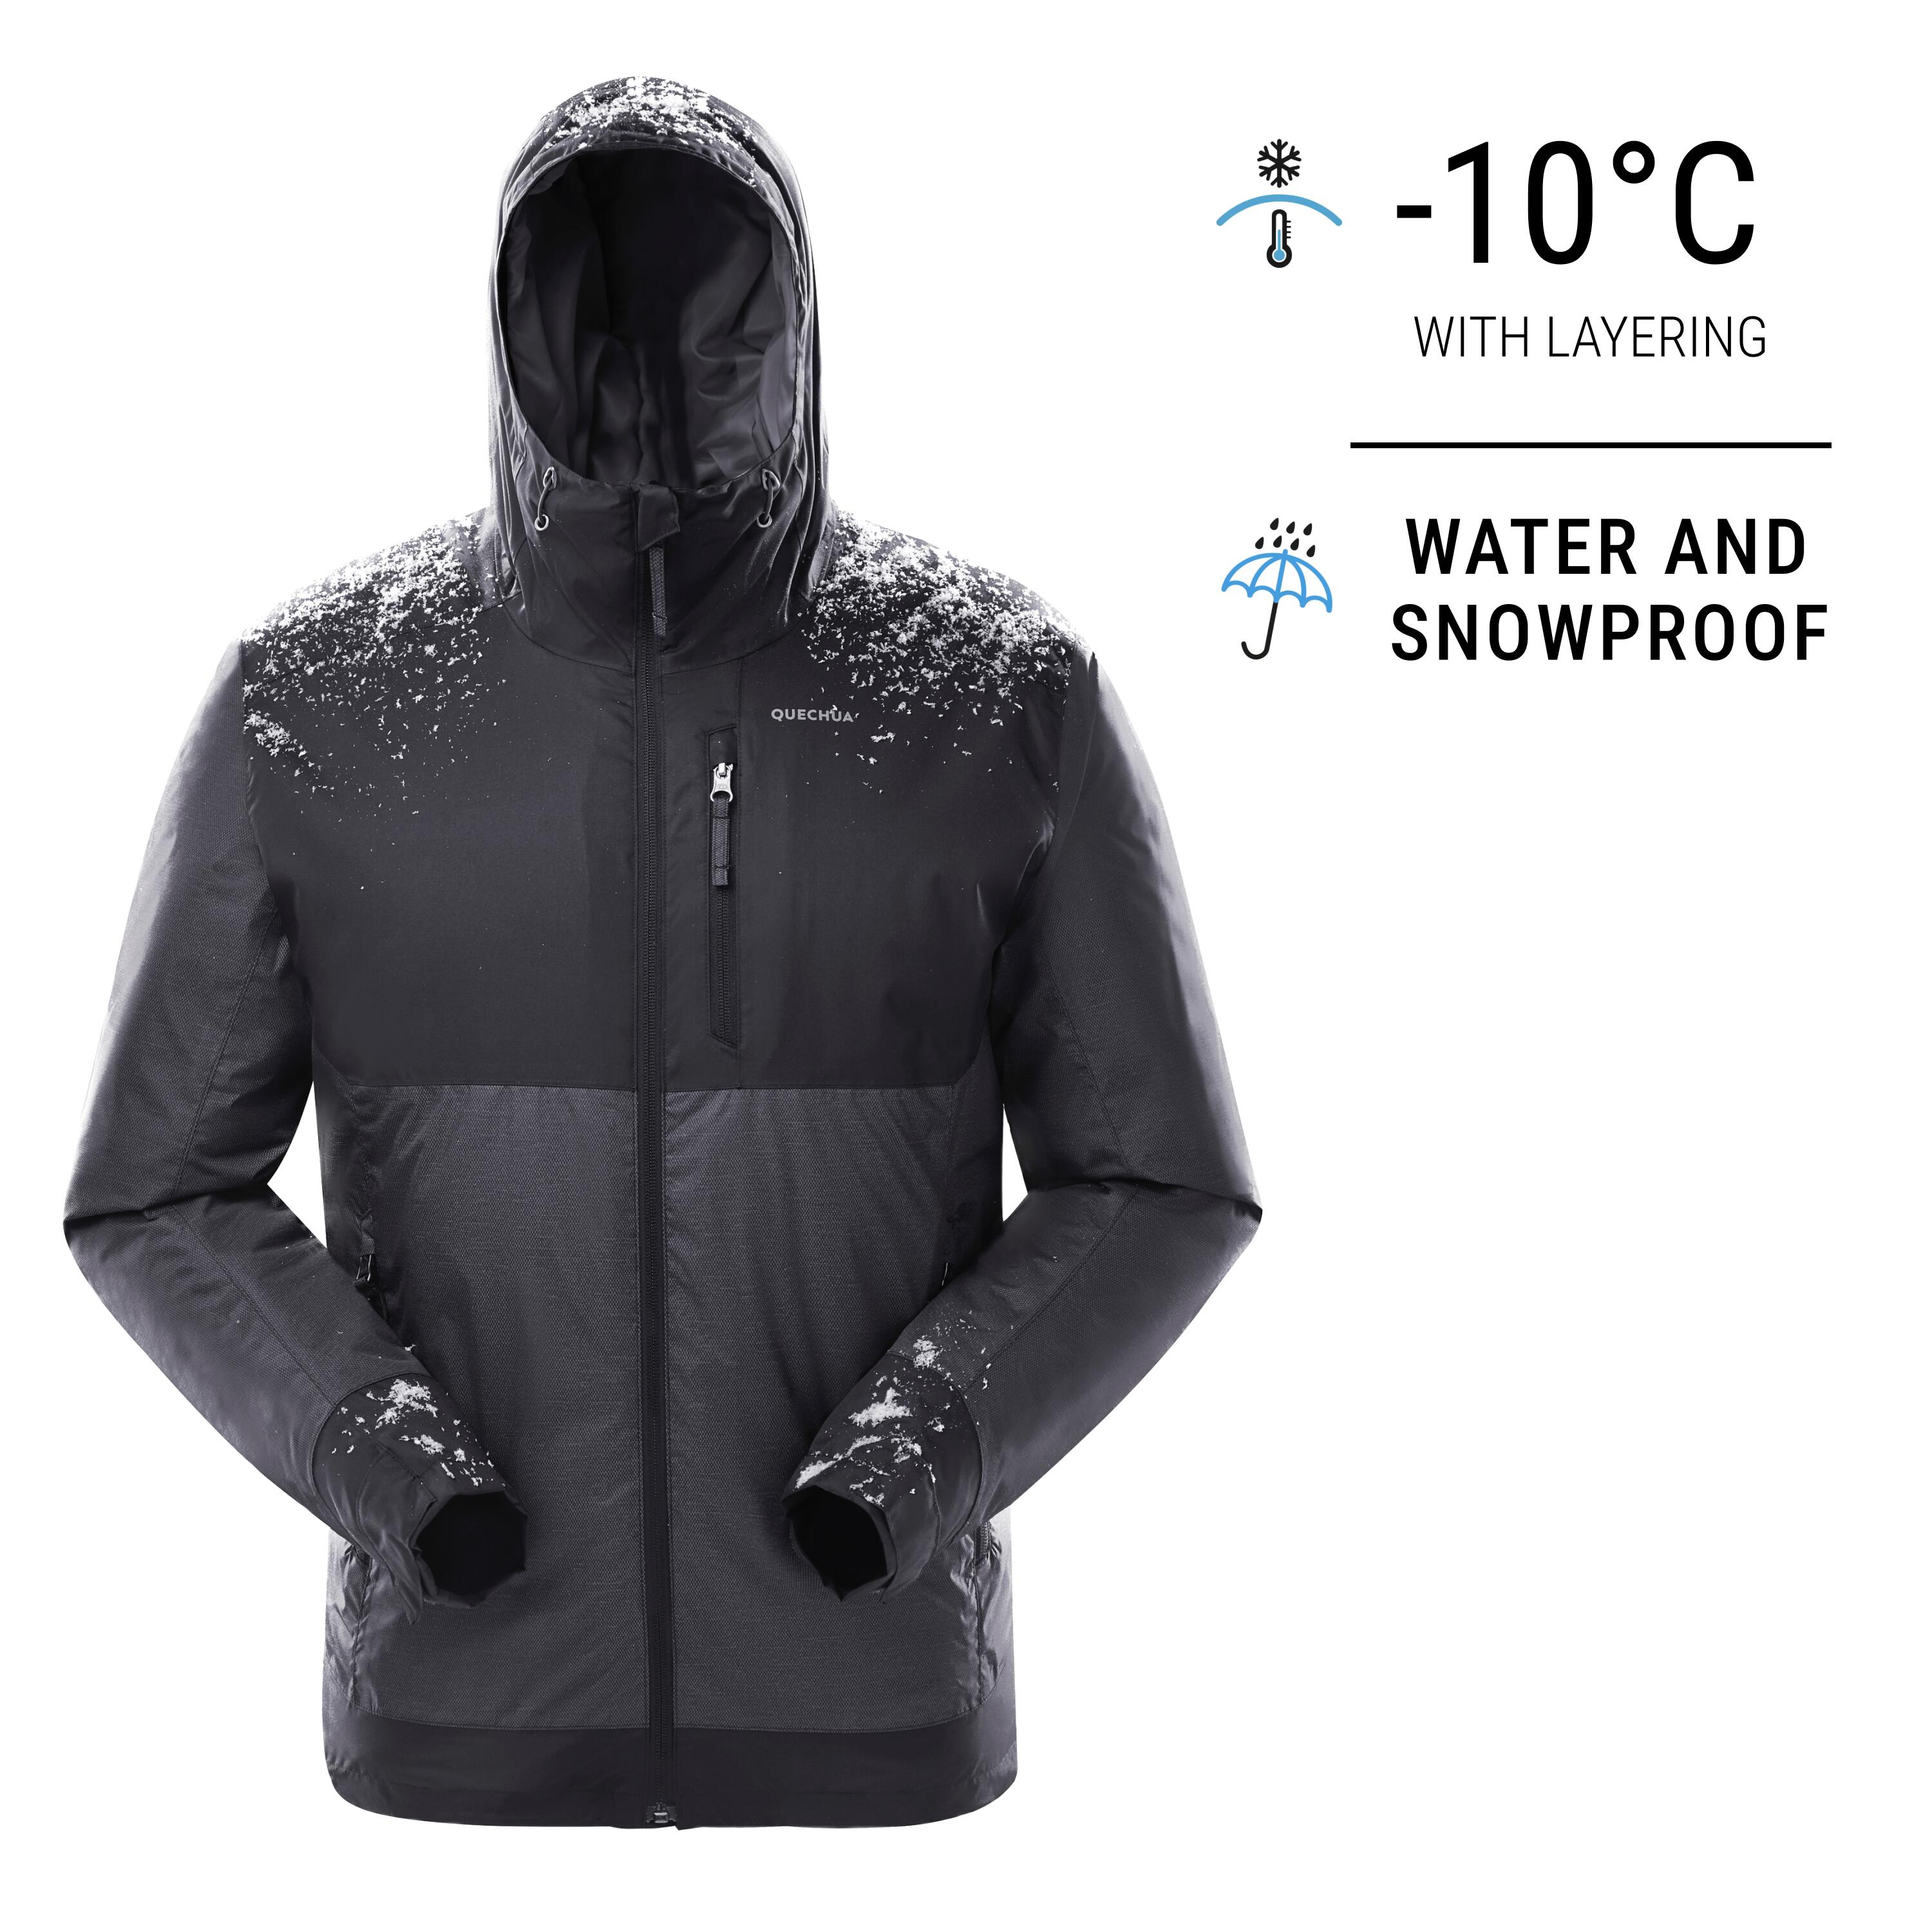 Men's hiking waterproof winter jacket - SH100 23°F | Winterjacken, Jacken,  Winter